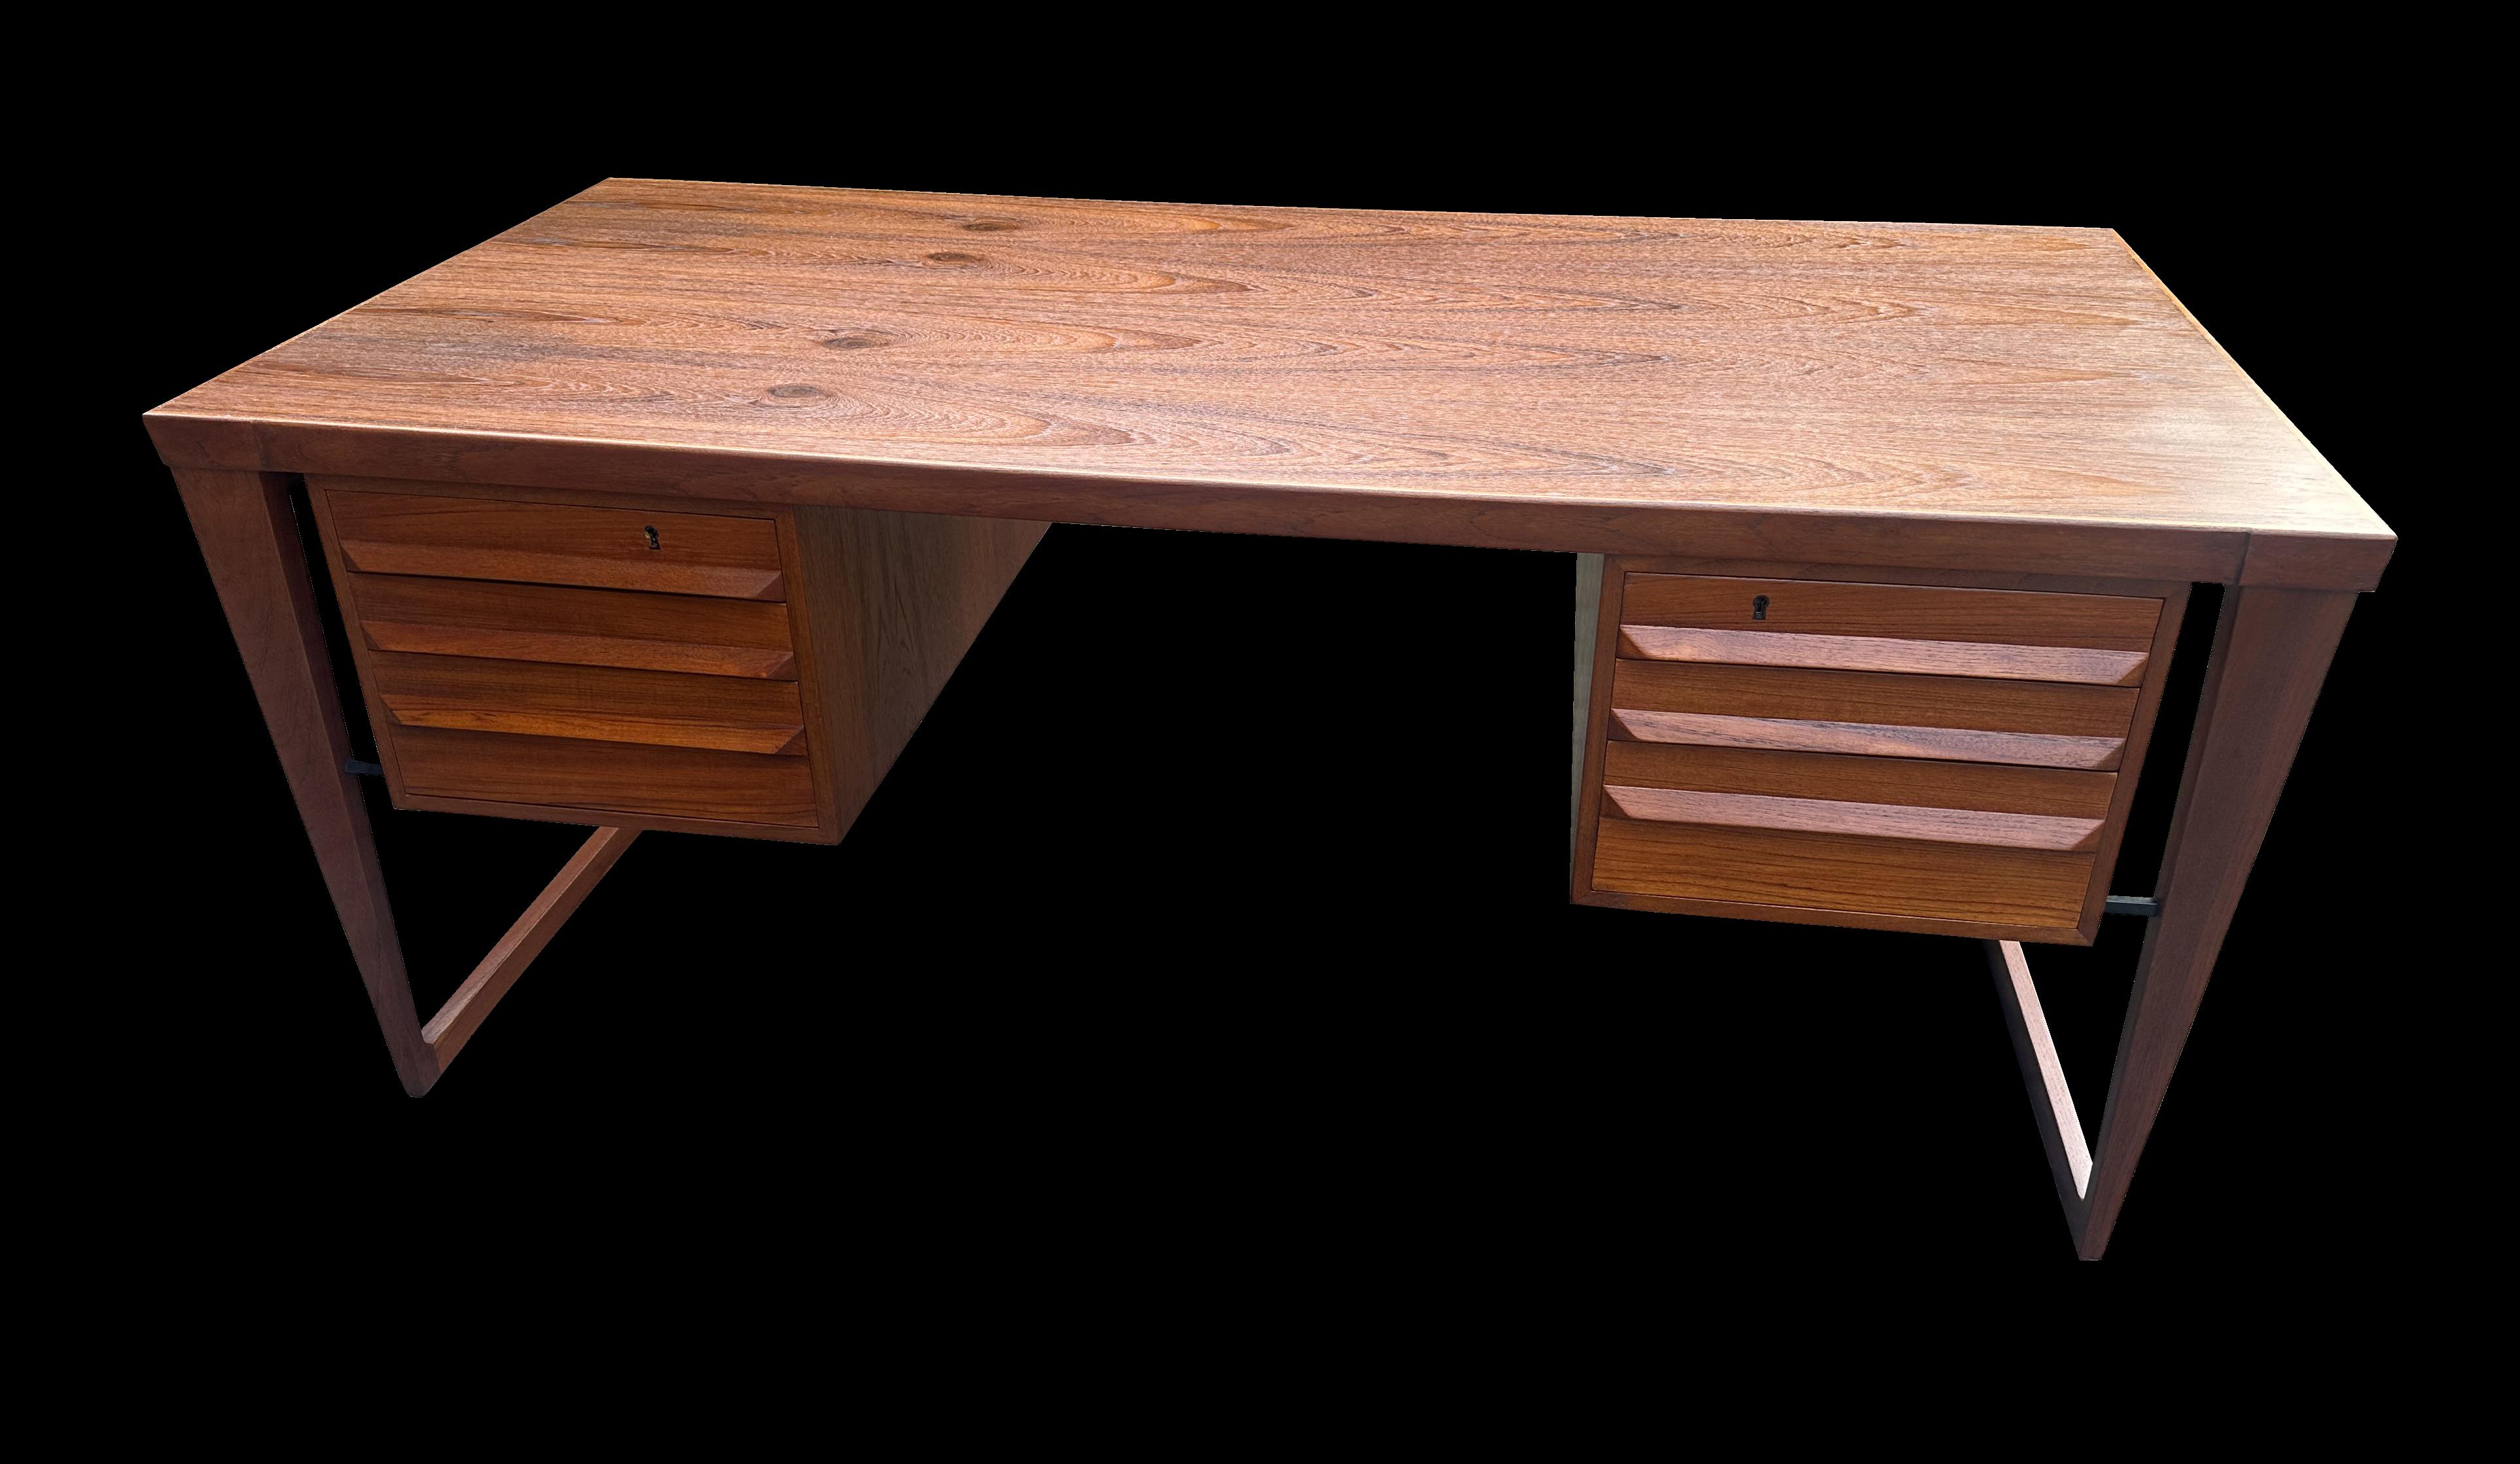 Ein hervorragendes Exemplar dieses Schreibtischs von Kai Kristiansen, hergestellt von Feldballes Møbelfabrik in den 1960er Jahren